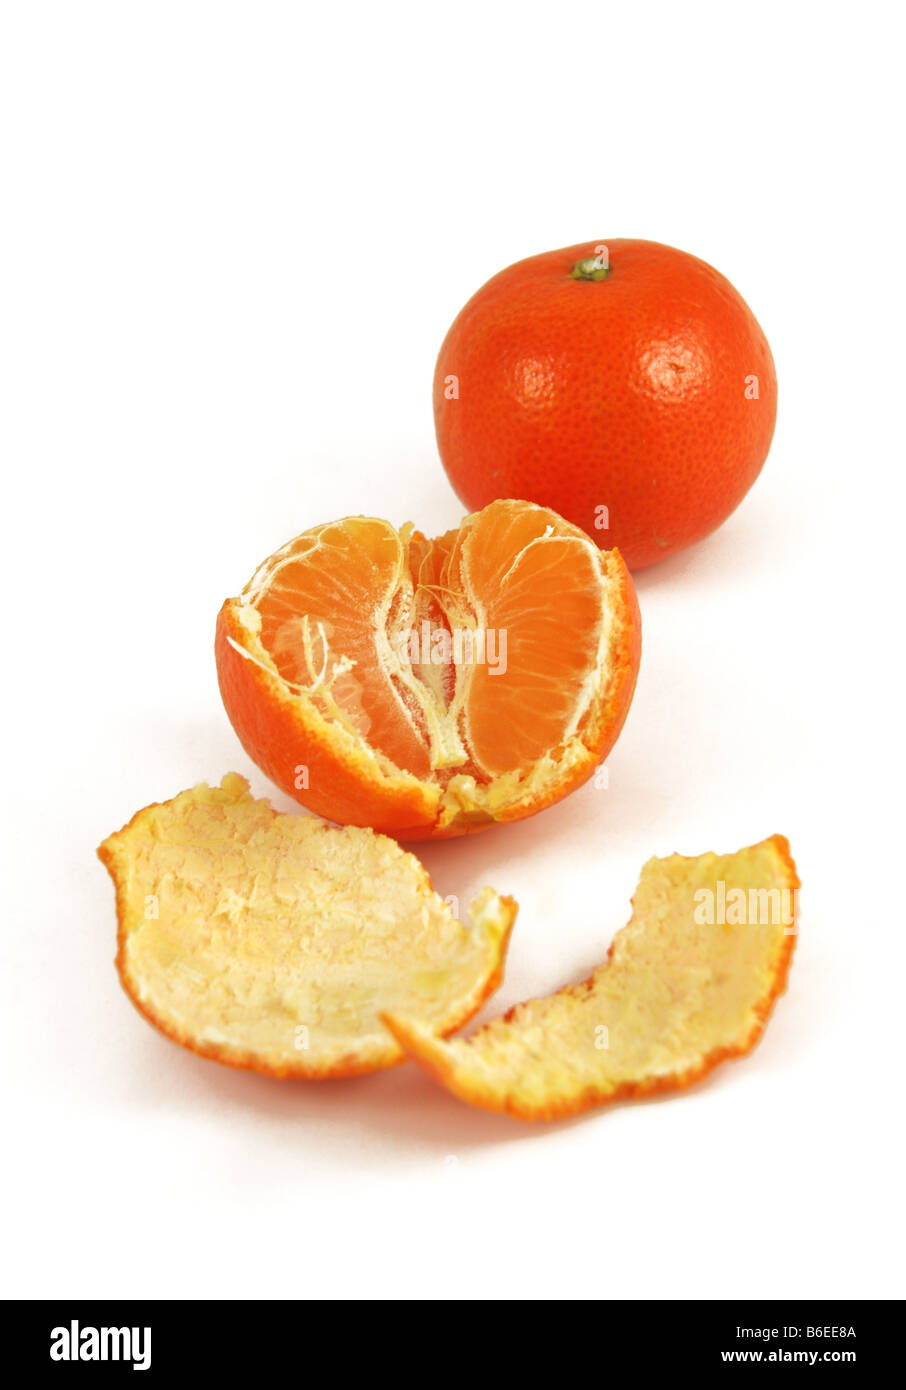 Eine halbe geschälte orange sitzt vor der ungeschälten ein. Stockfoto